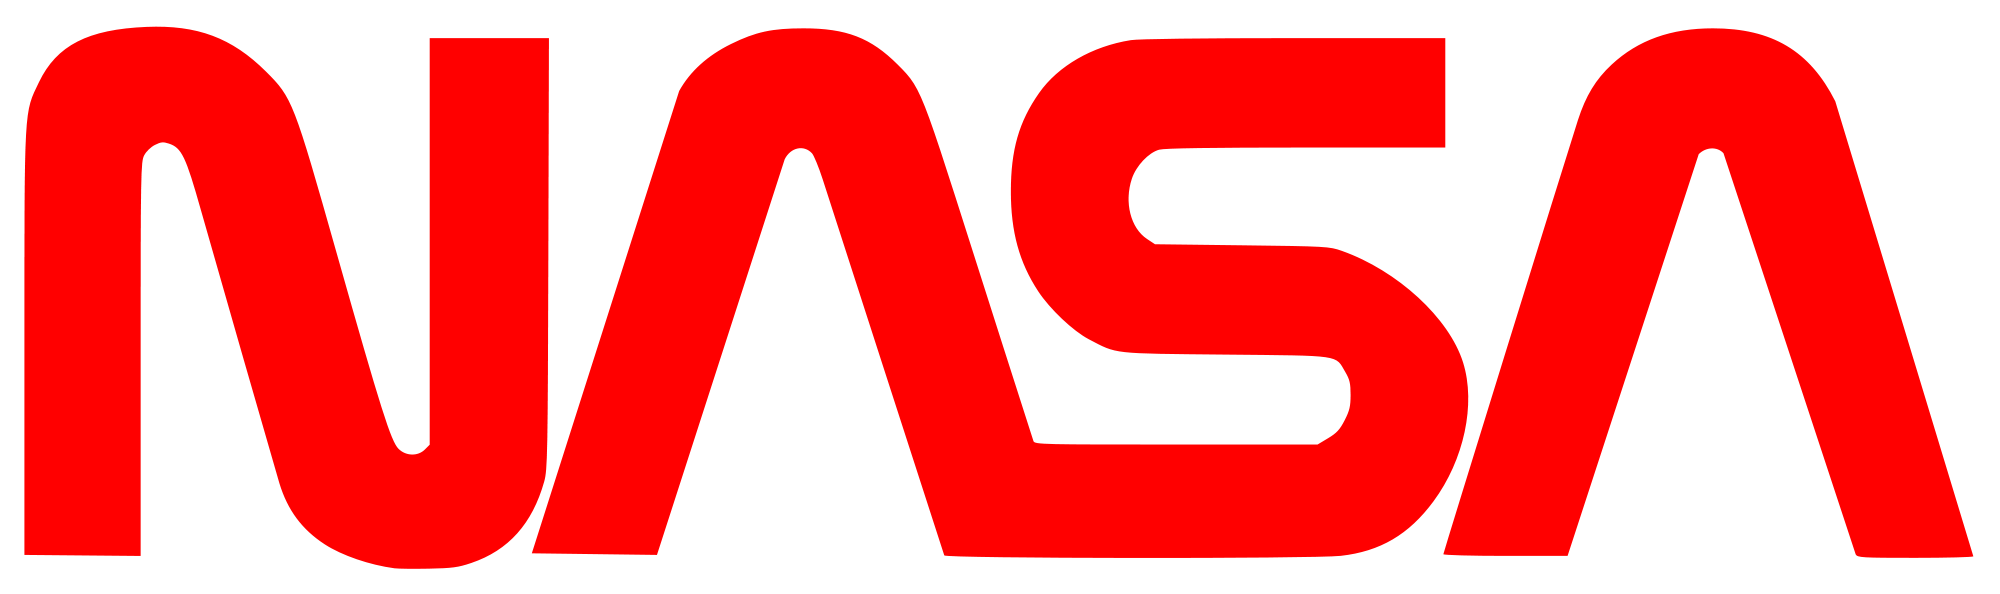 NASA Vector Logo - Best Free Naca Nasa Logos Decals Vector Photos – Vector Art Library